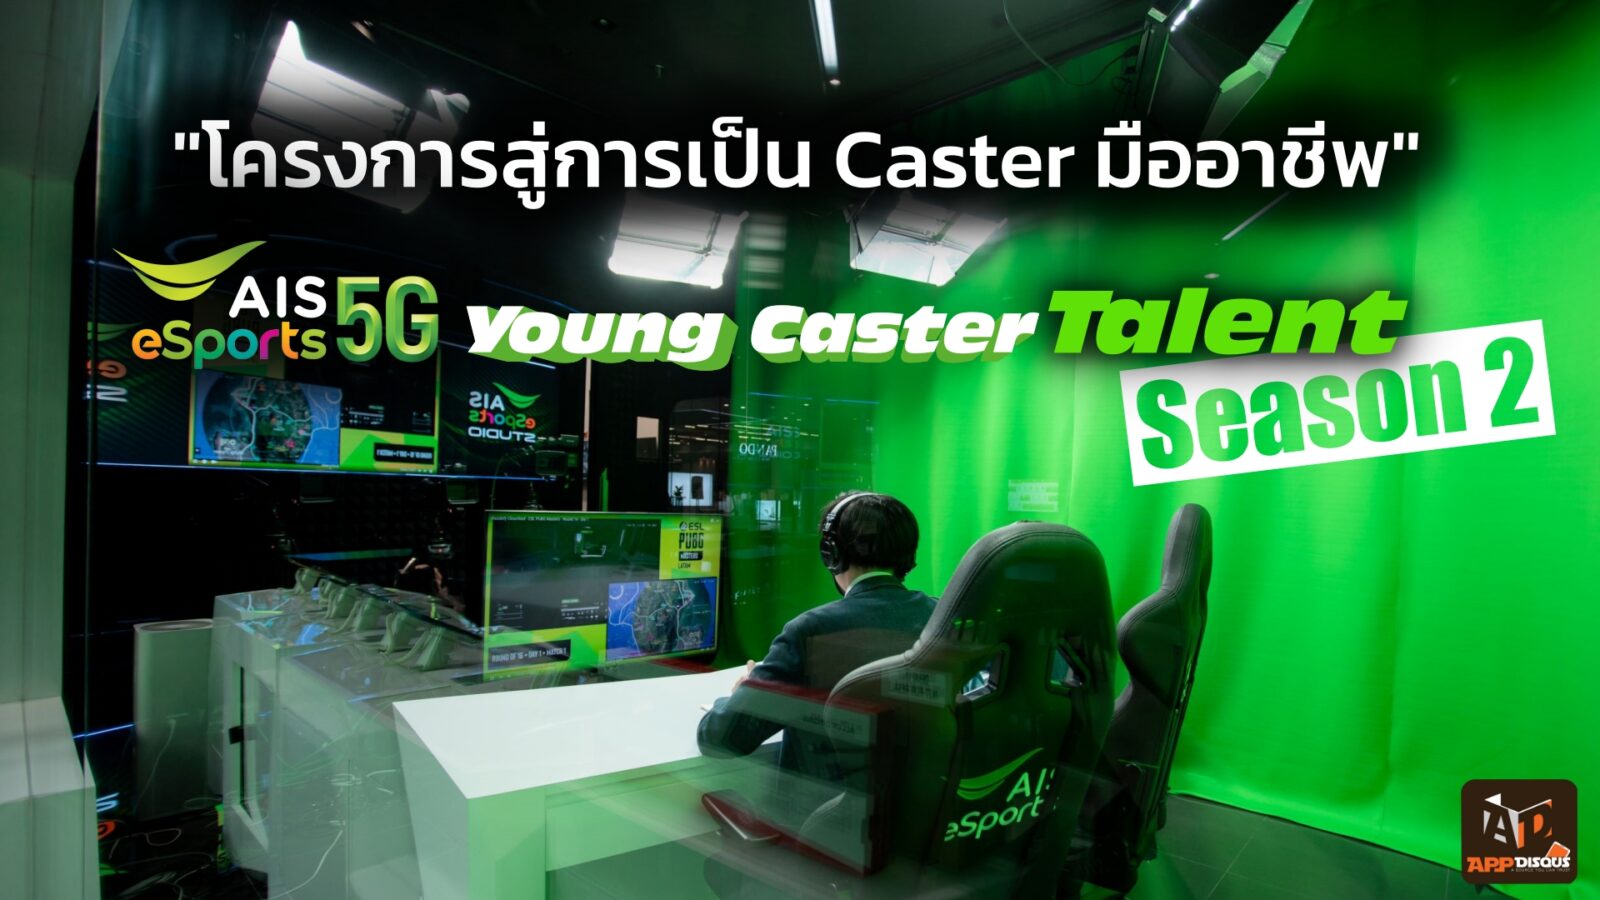 AIS eSports Young Caster Talent Season 2 | AIS | AIS ป๋าดันแห่งวงการ eSports กรุยทาง! ผู้ฝันอยากเป็นแคสเตอร์เกม เรียนรู้จากมืออาชีพสู่การเป็นมืออาชีพ เริ่มสมัครซีซั่น 2 ในเดือนตุลาคม